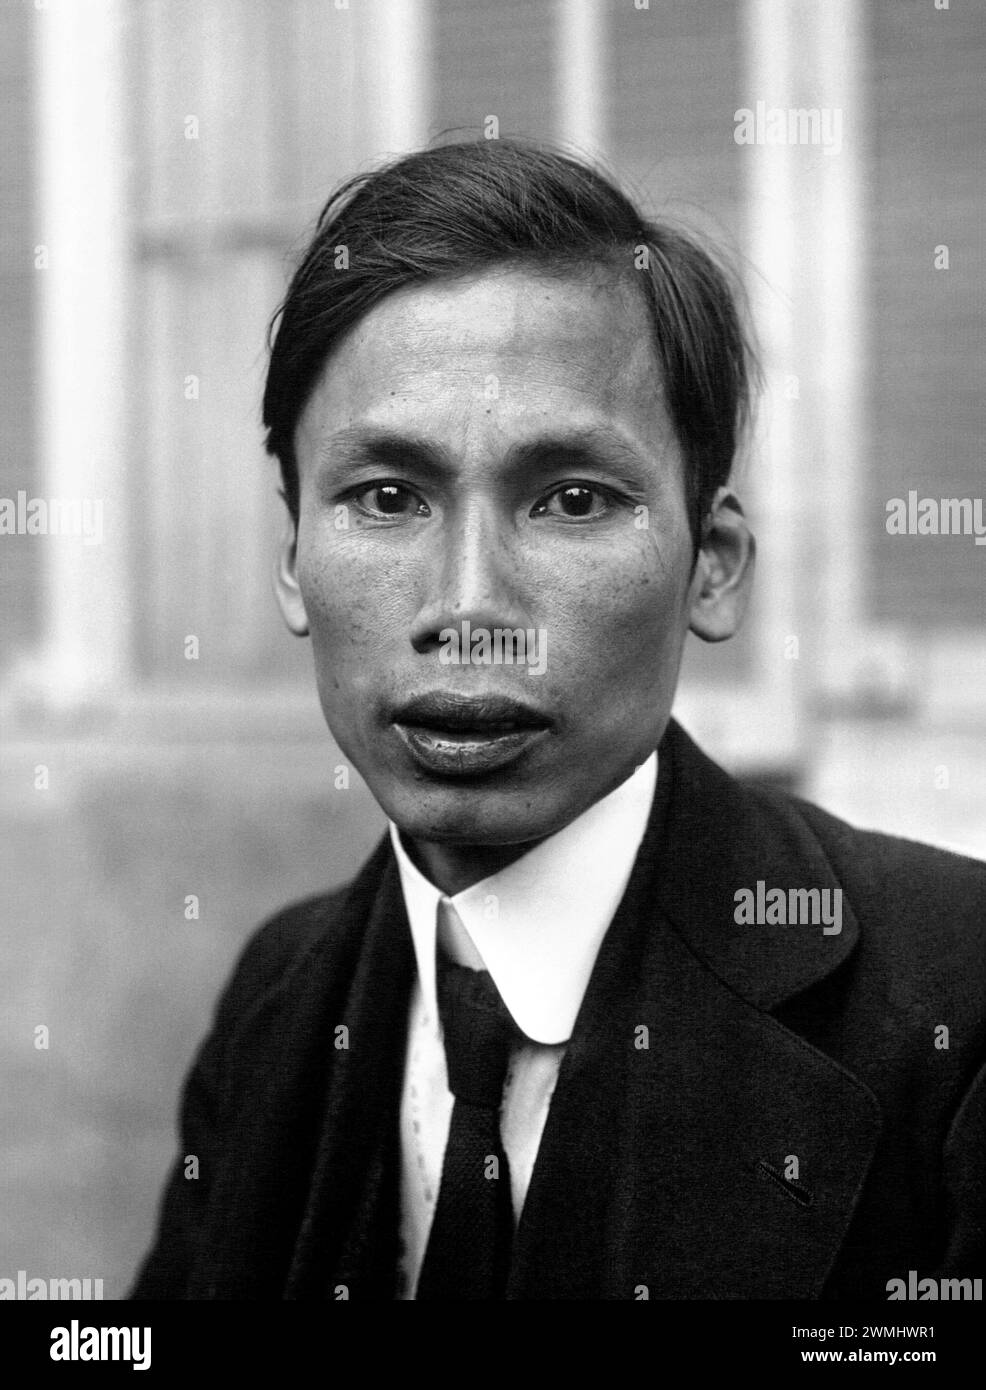 Ho Chi Minh. Porträt des vietnamesischen kommunistischen Revolutionärs Hồ Chí Minh (né Nguyễn Sinh Cung 1890–1969), 1921. Ho Chi Minh war von 1945 bis 1969 der 1. Präsident der Demokratischen Republik Vietnam. Stockfoto